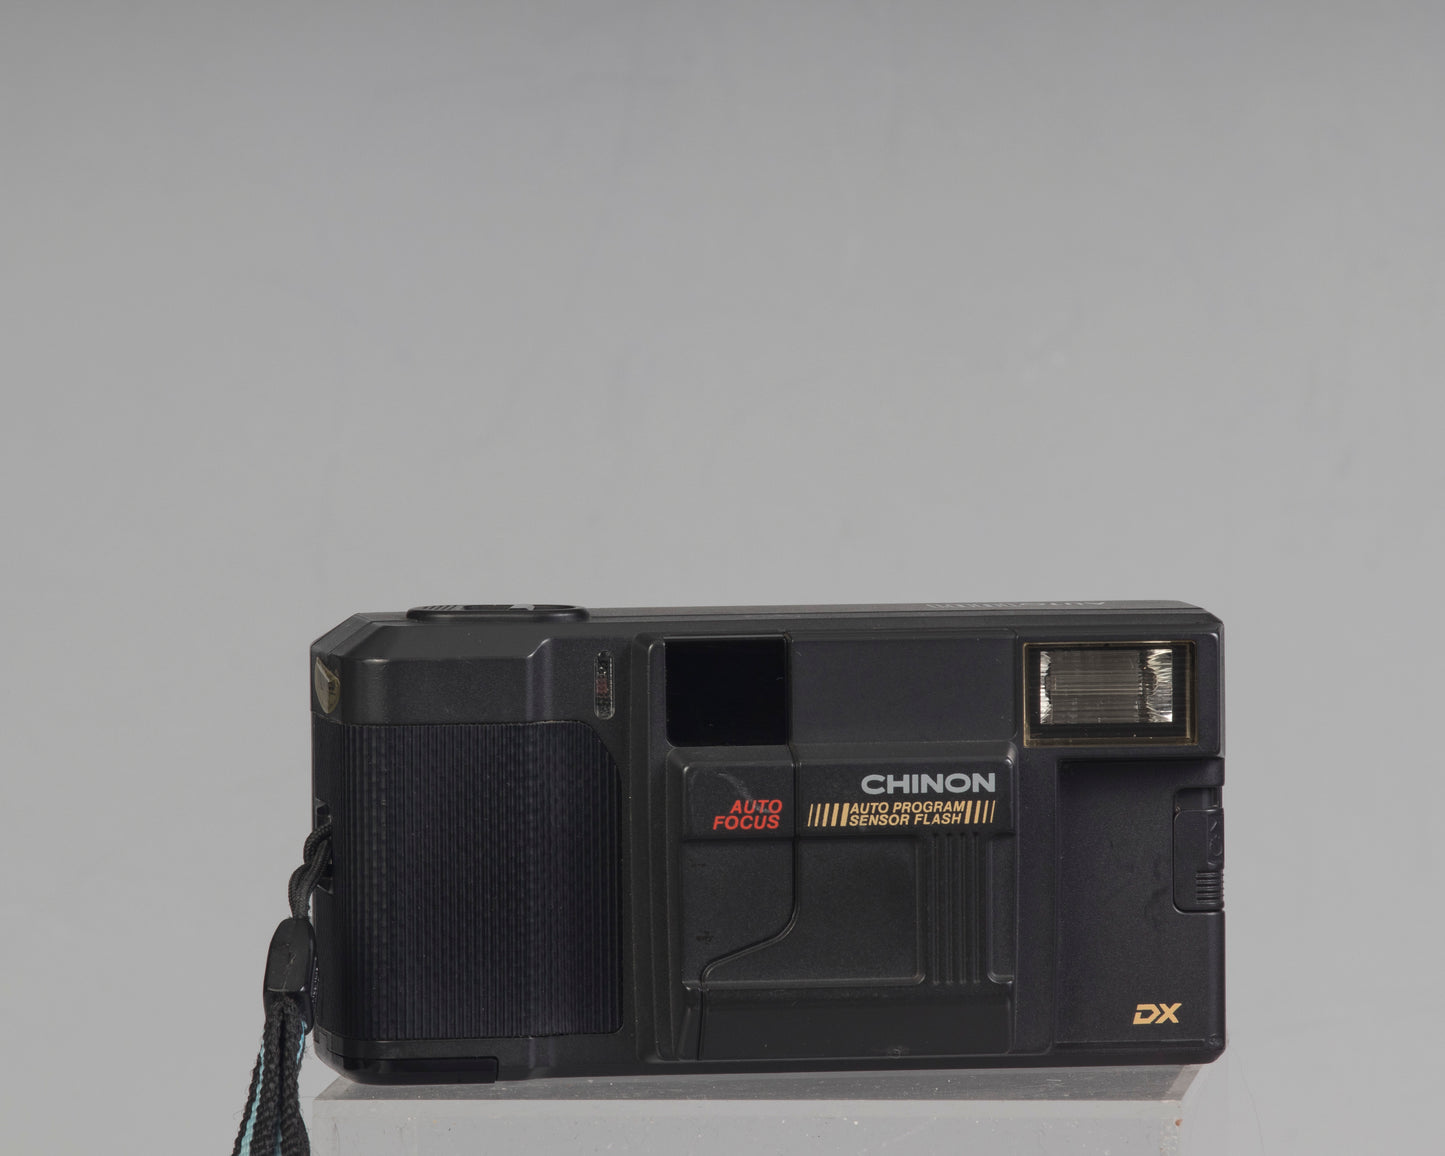 Chinon Auto 1001 autofocus 35mm film camera